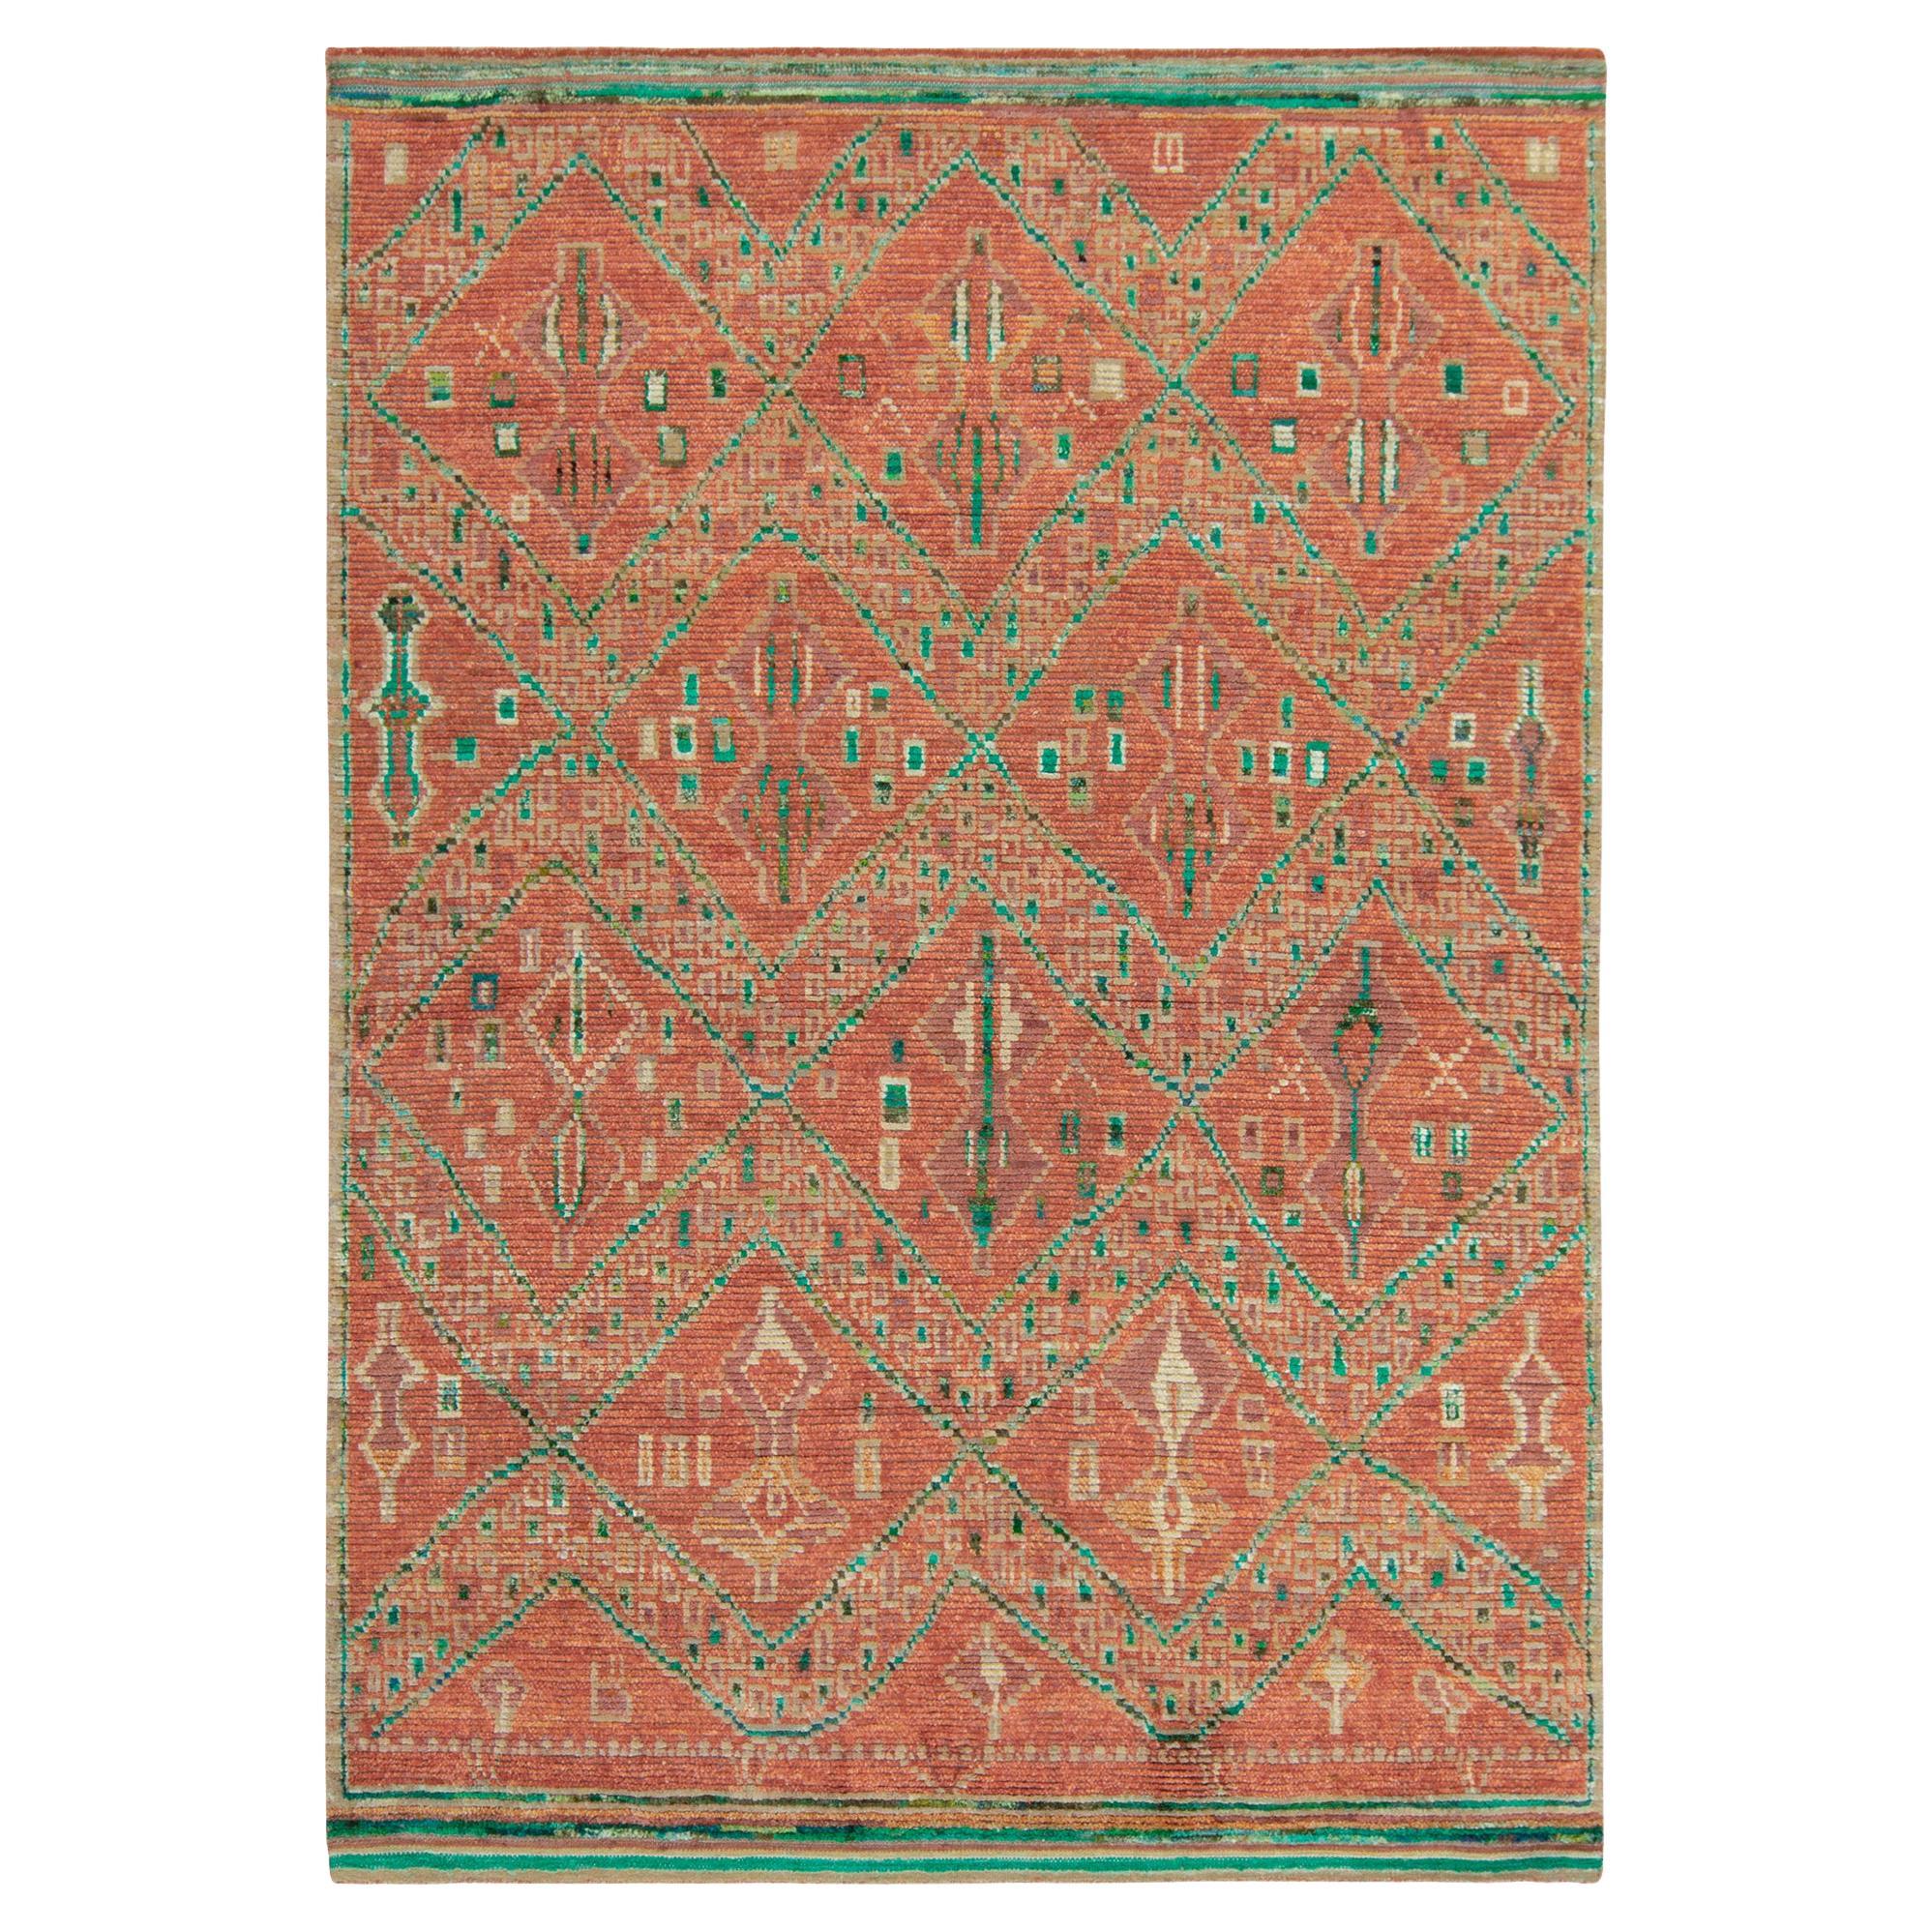 Marokkanischer Teppich von Rug & Kilim in Orange und Grün mit geometrischem Muster